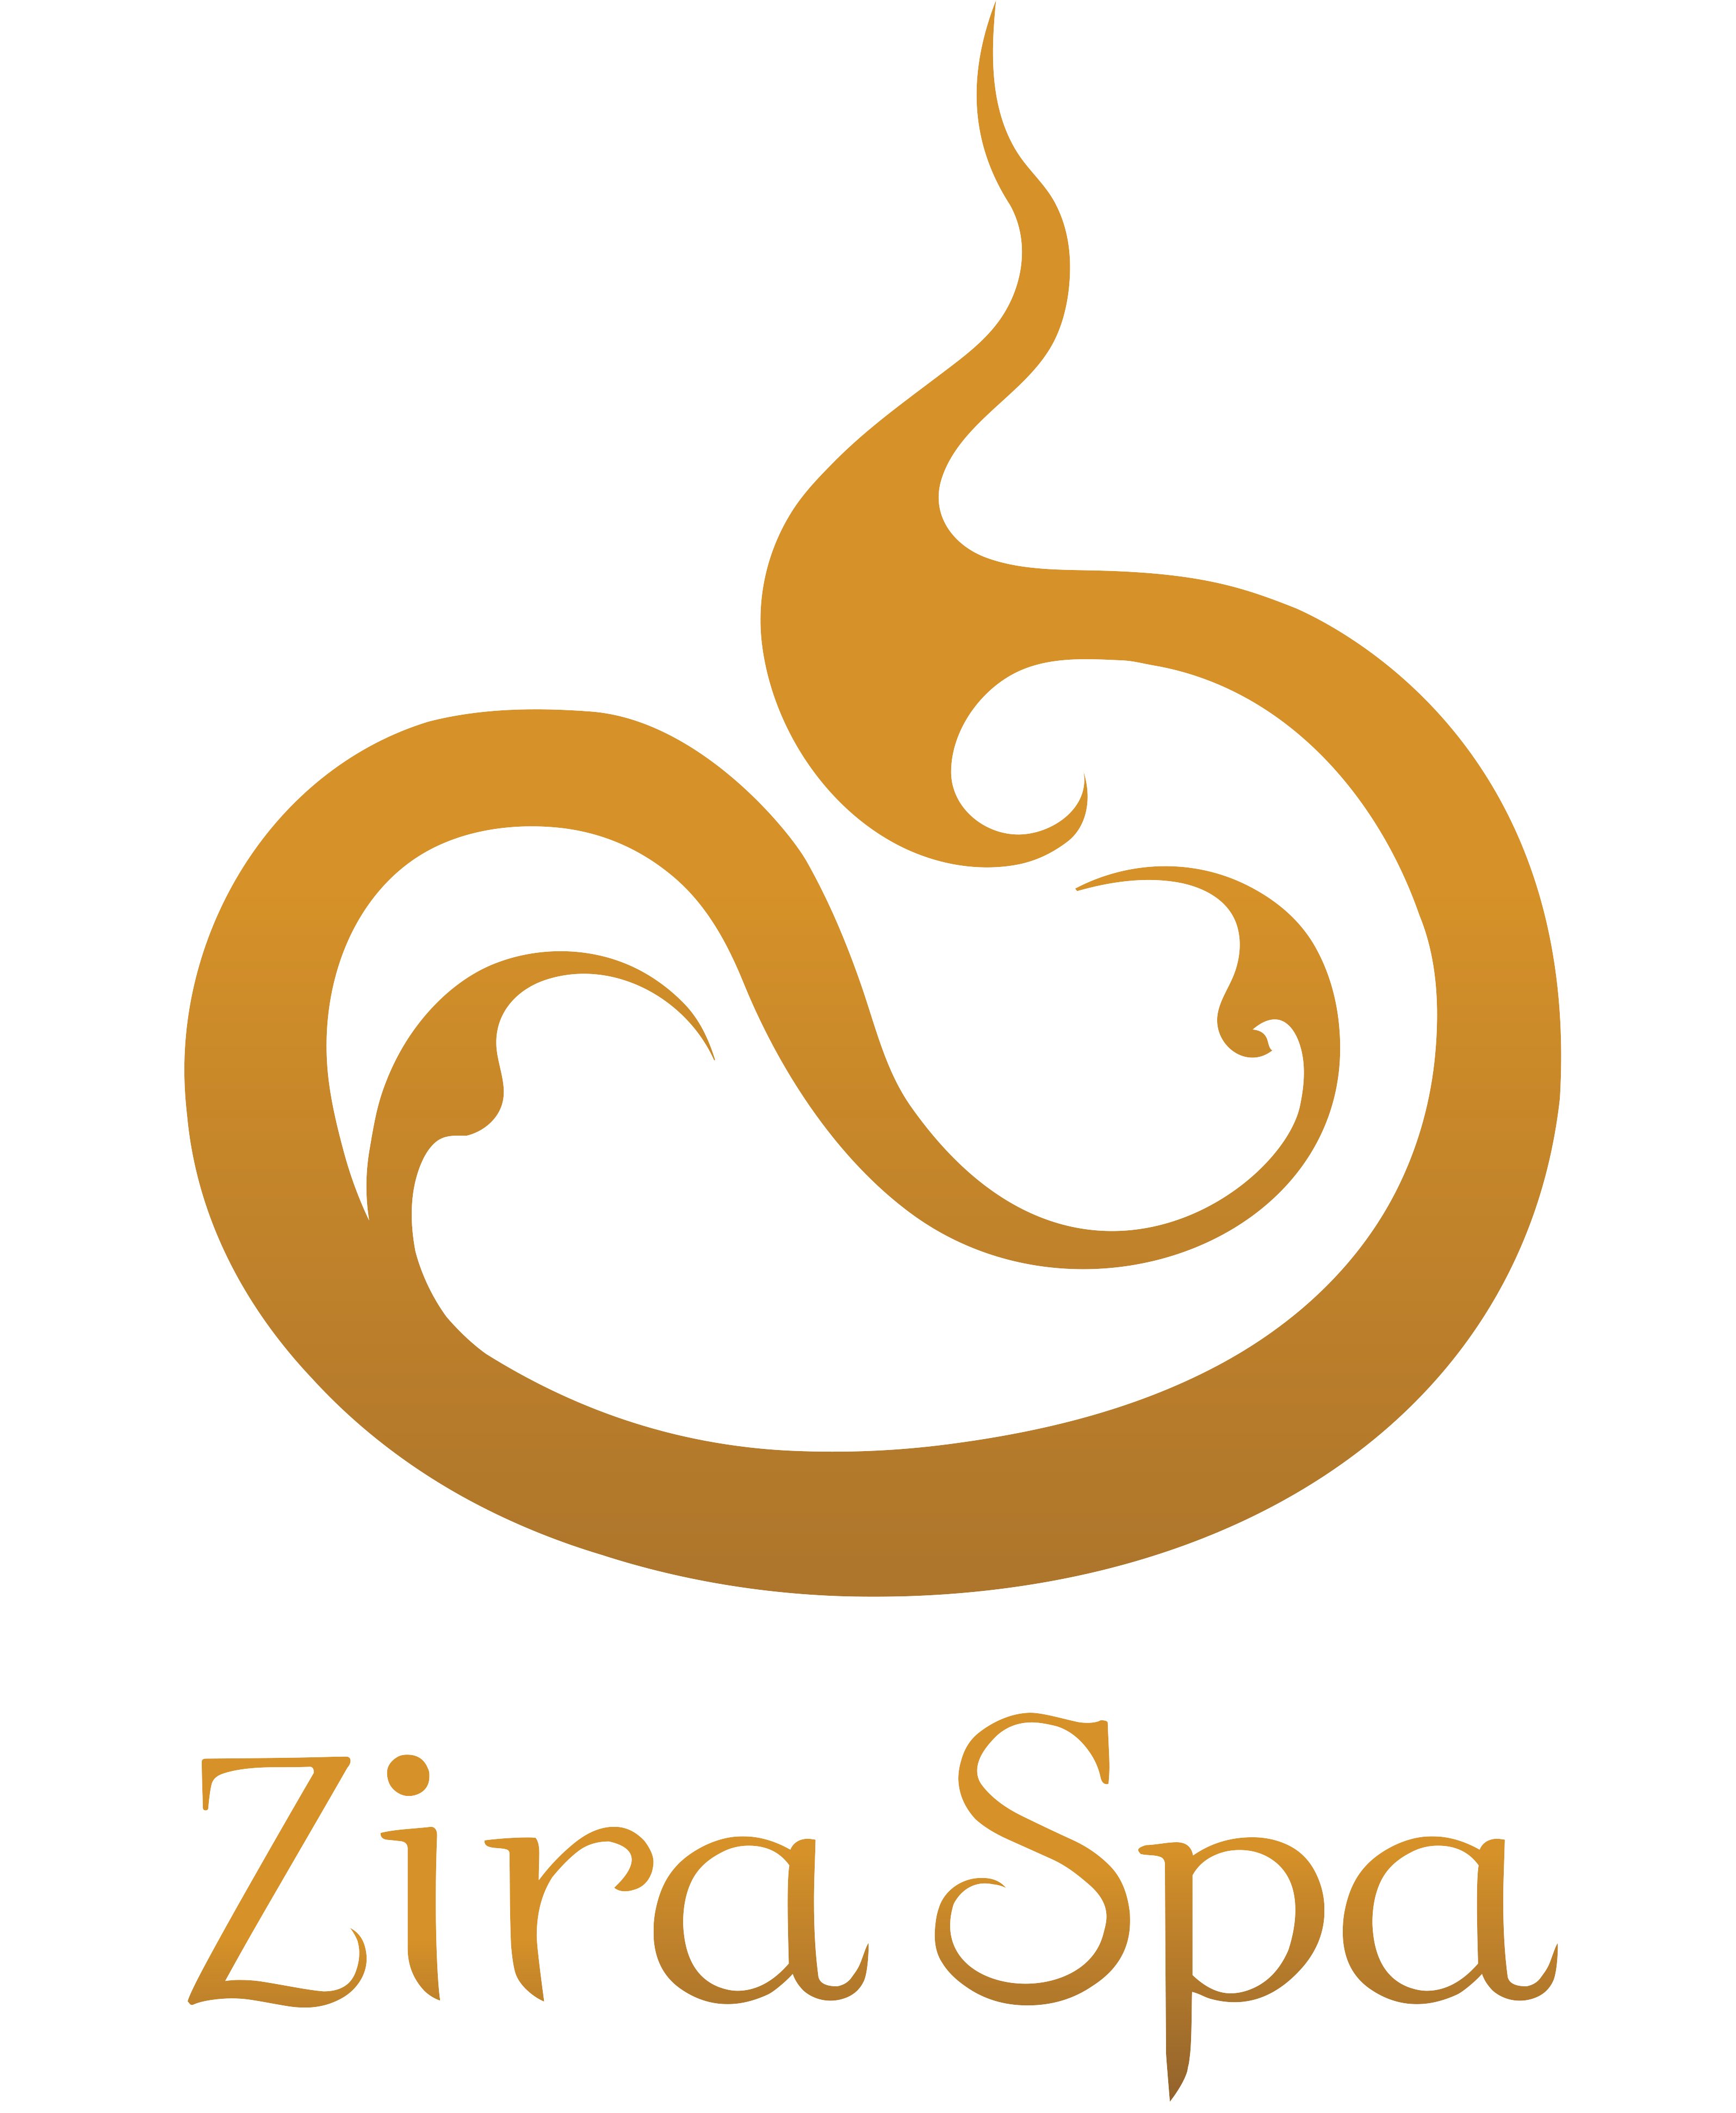 Zira Spa